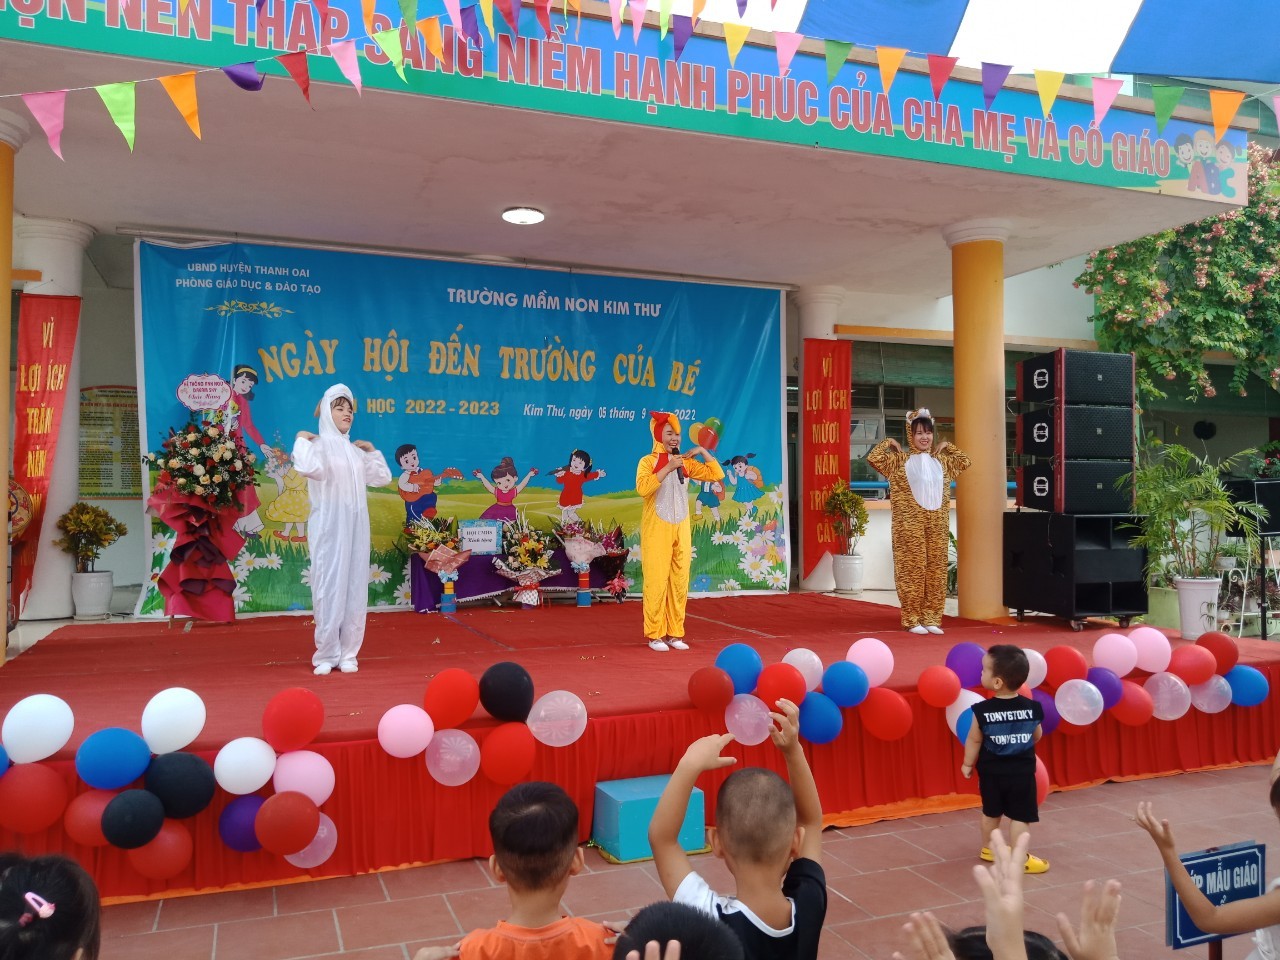 Trường mầm non Kim Thư tưng bừng trong " Ngày hội đến trường của bé" Năm học 2022-2023